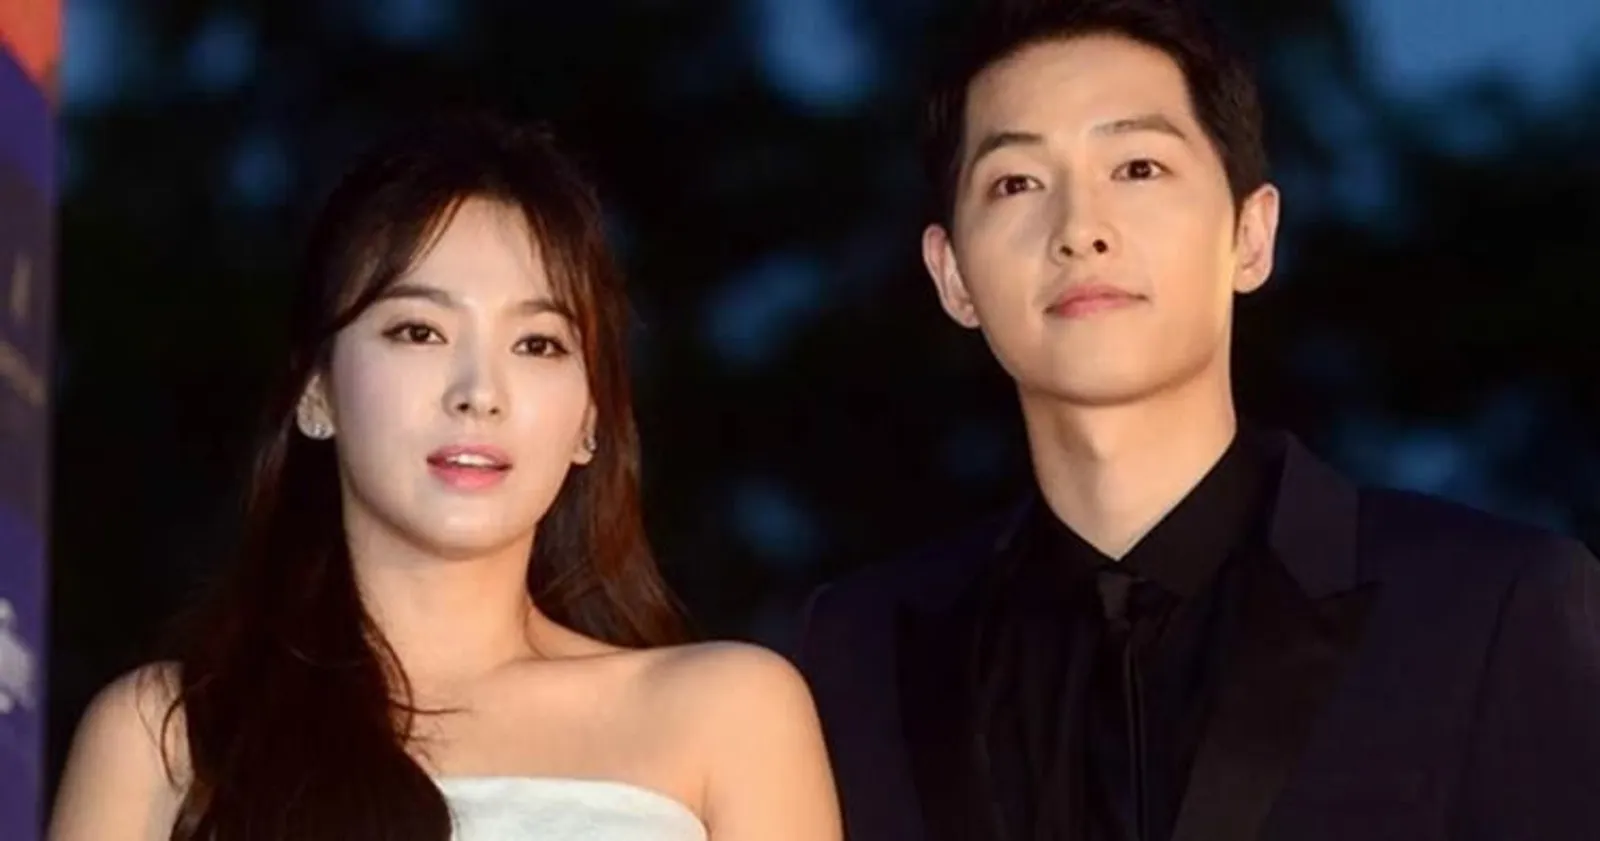 Nggak Seindah Drama, 7 Fakta Perceraian Song Joong Ki dan Song Hye Kyo